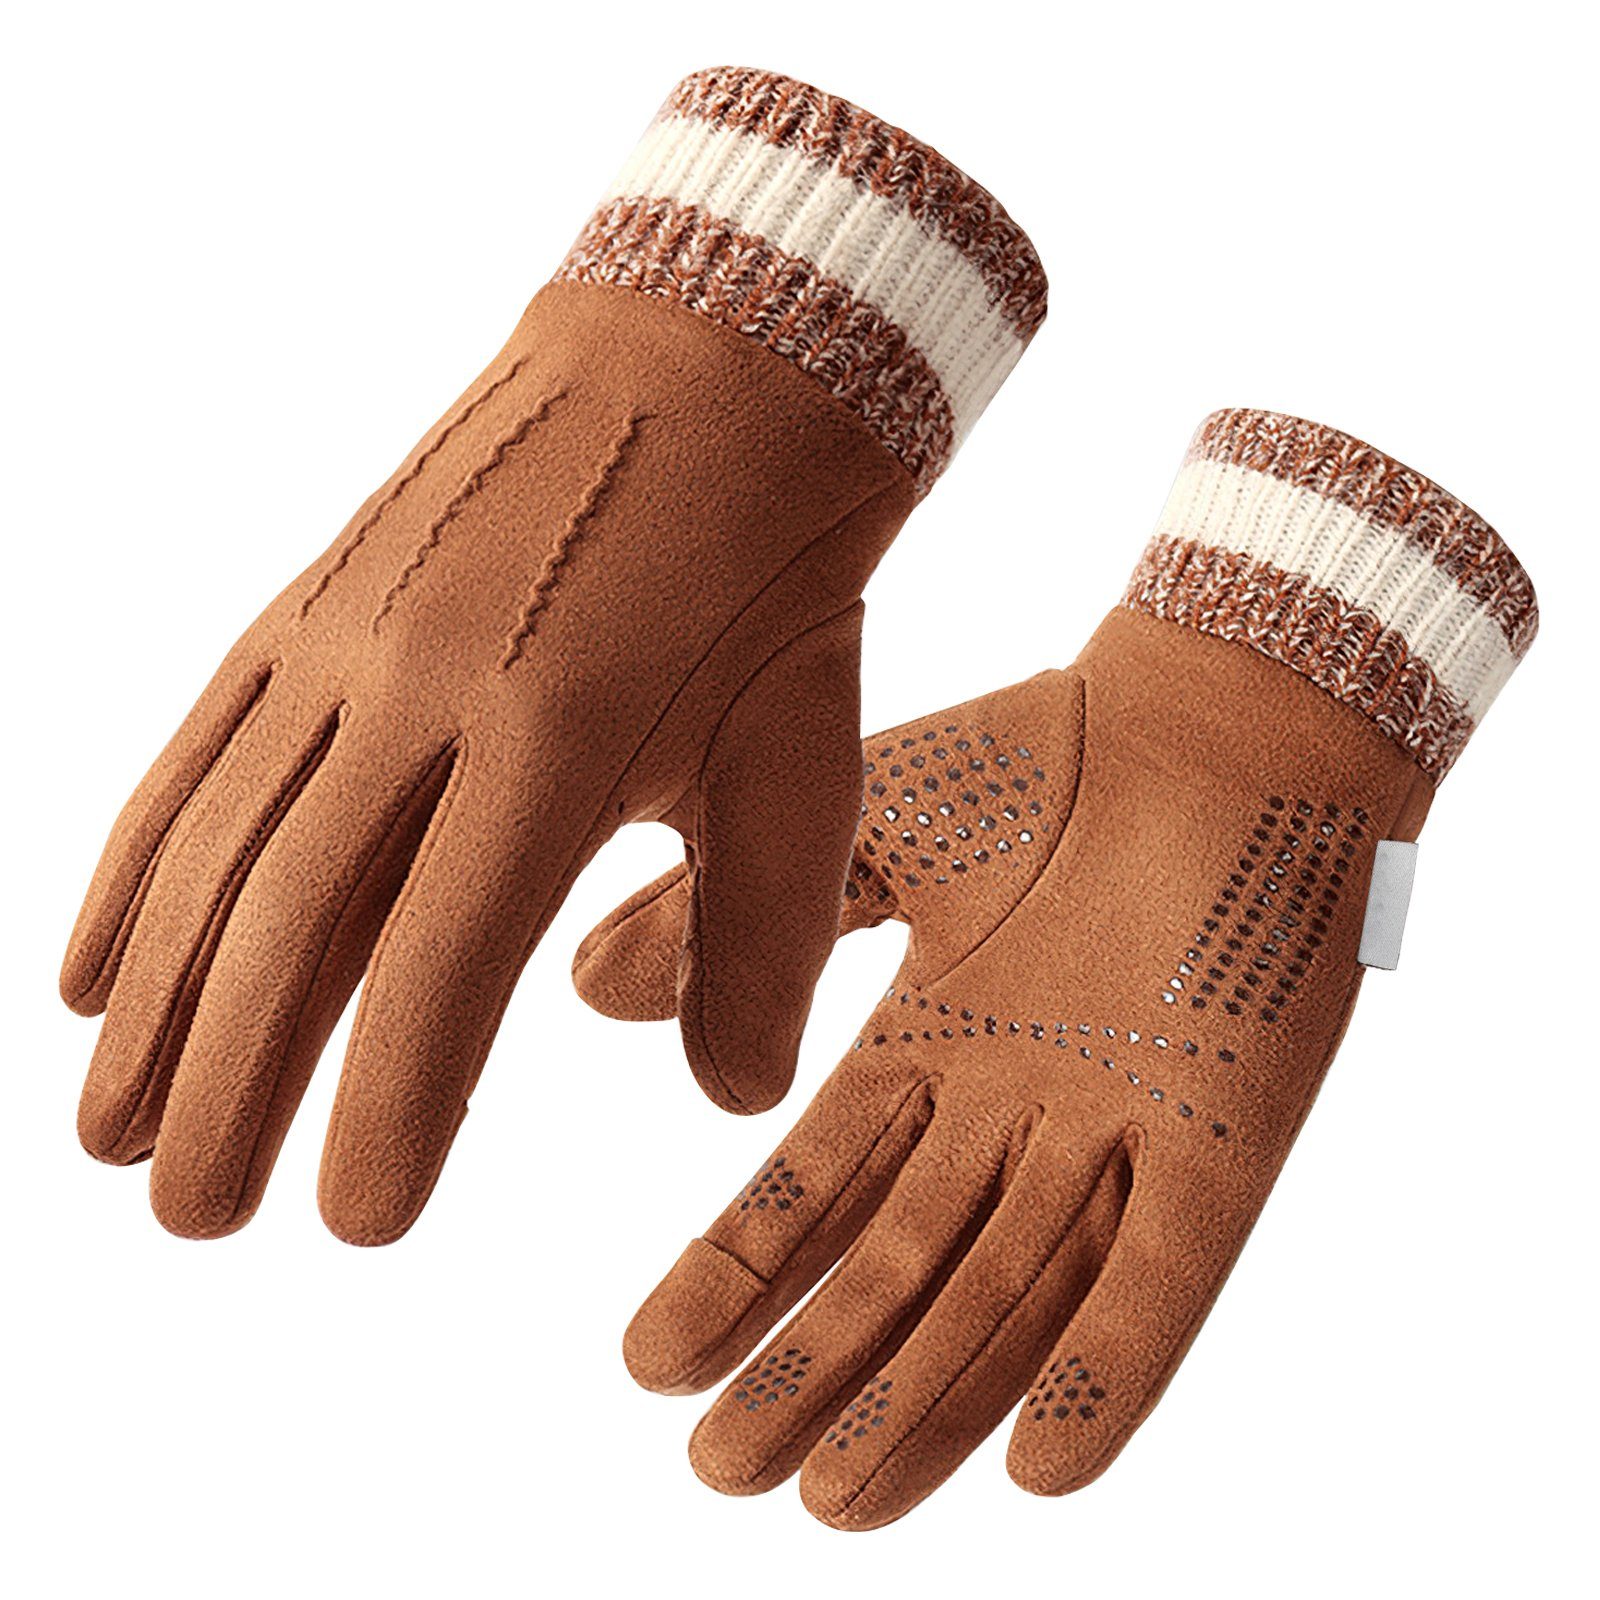 EXTSUD Reithandschuhe Handschuhe Winterhandschuhe Thermohandschuhe Strick Fingerhandschuhe (Sport Gloves Warm Winddicht, Outdoor mit Futter) für Ski Radfahren Damen Kamel